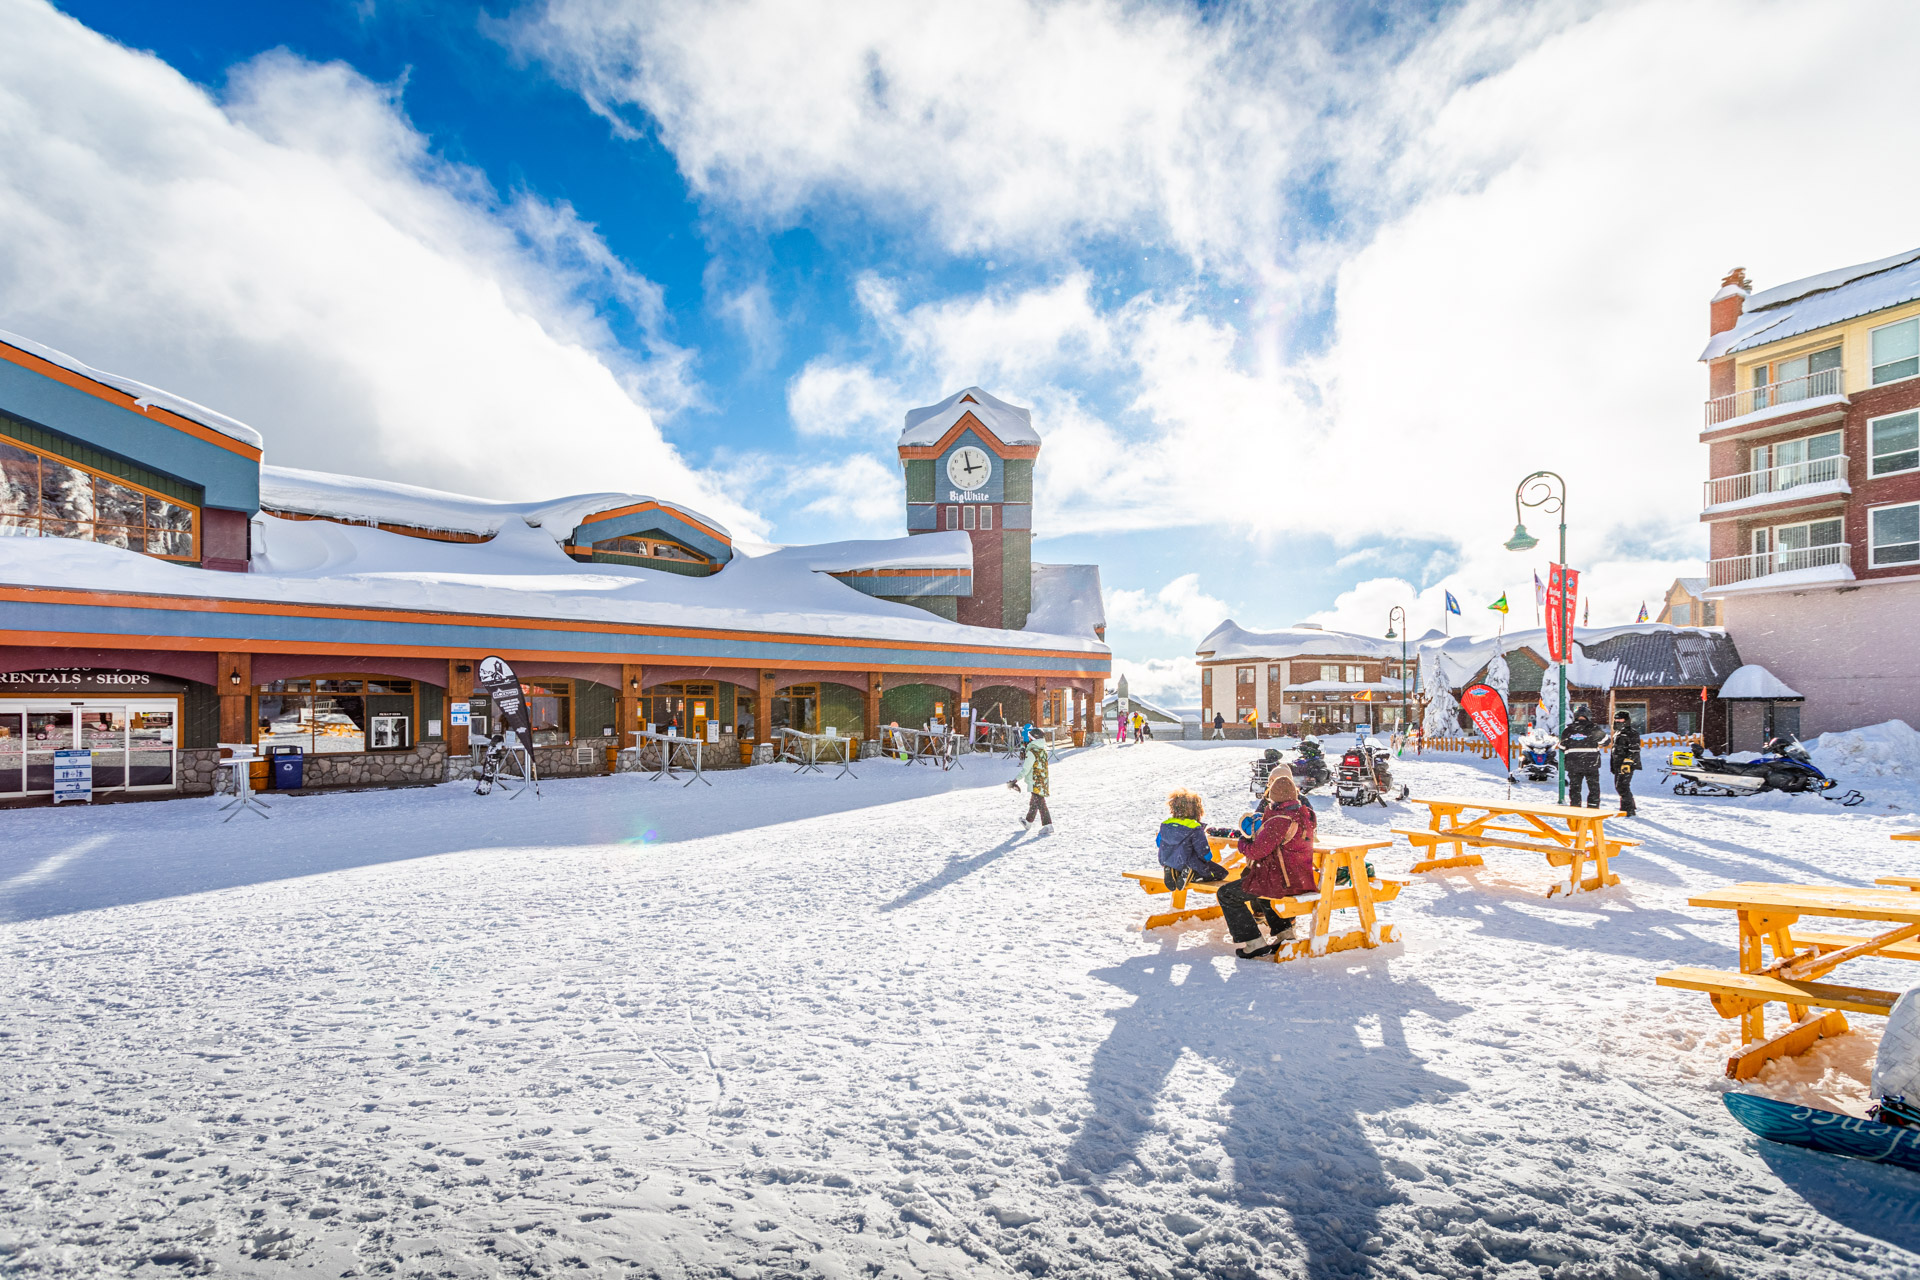 Winter activities at Big White Ski Resort